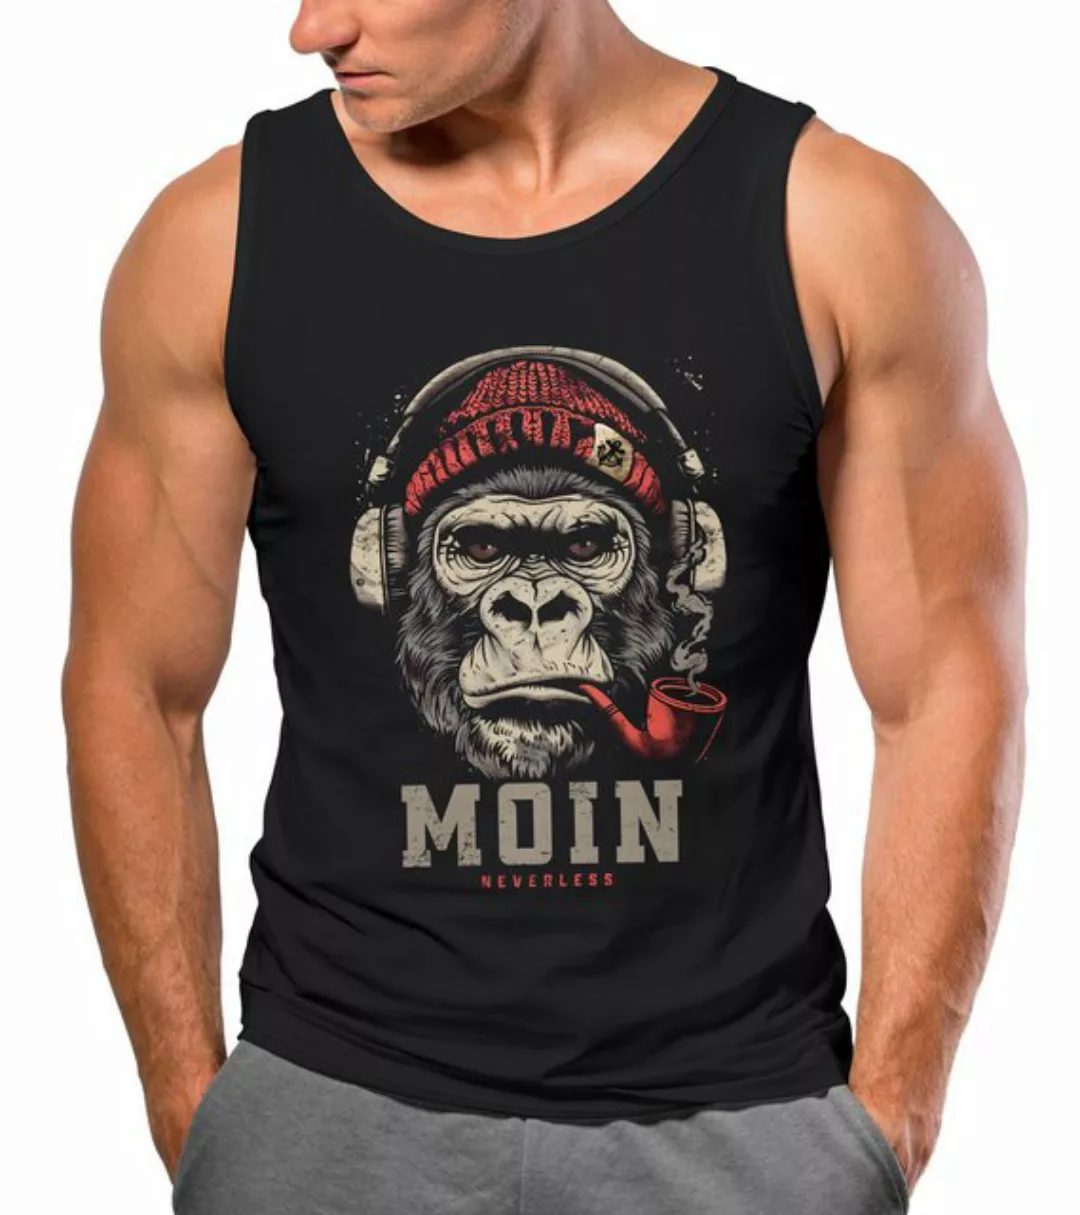 Neverless Tanktop Herren Tank-Top Shirt Moin Schriftzug Gorilla Musik Aufdr günstig online kaufen